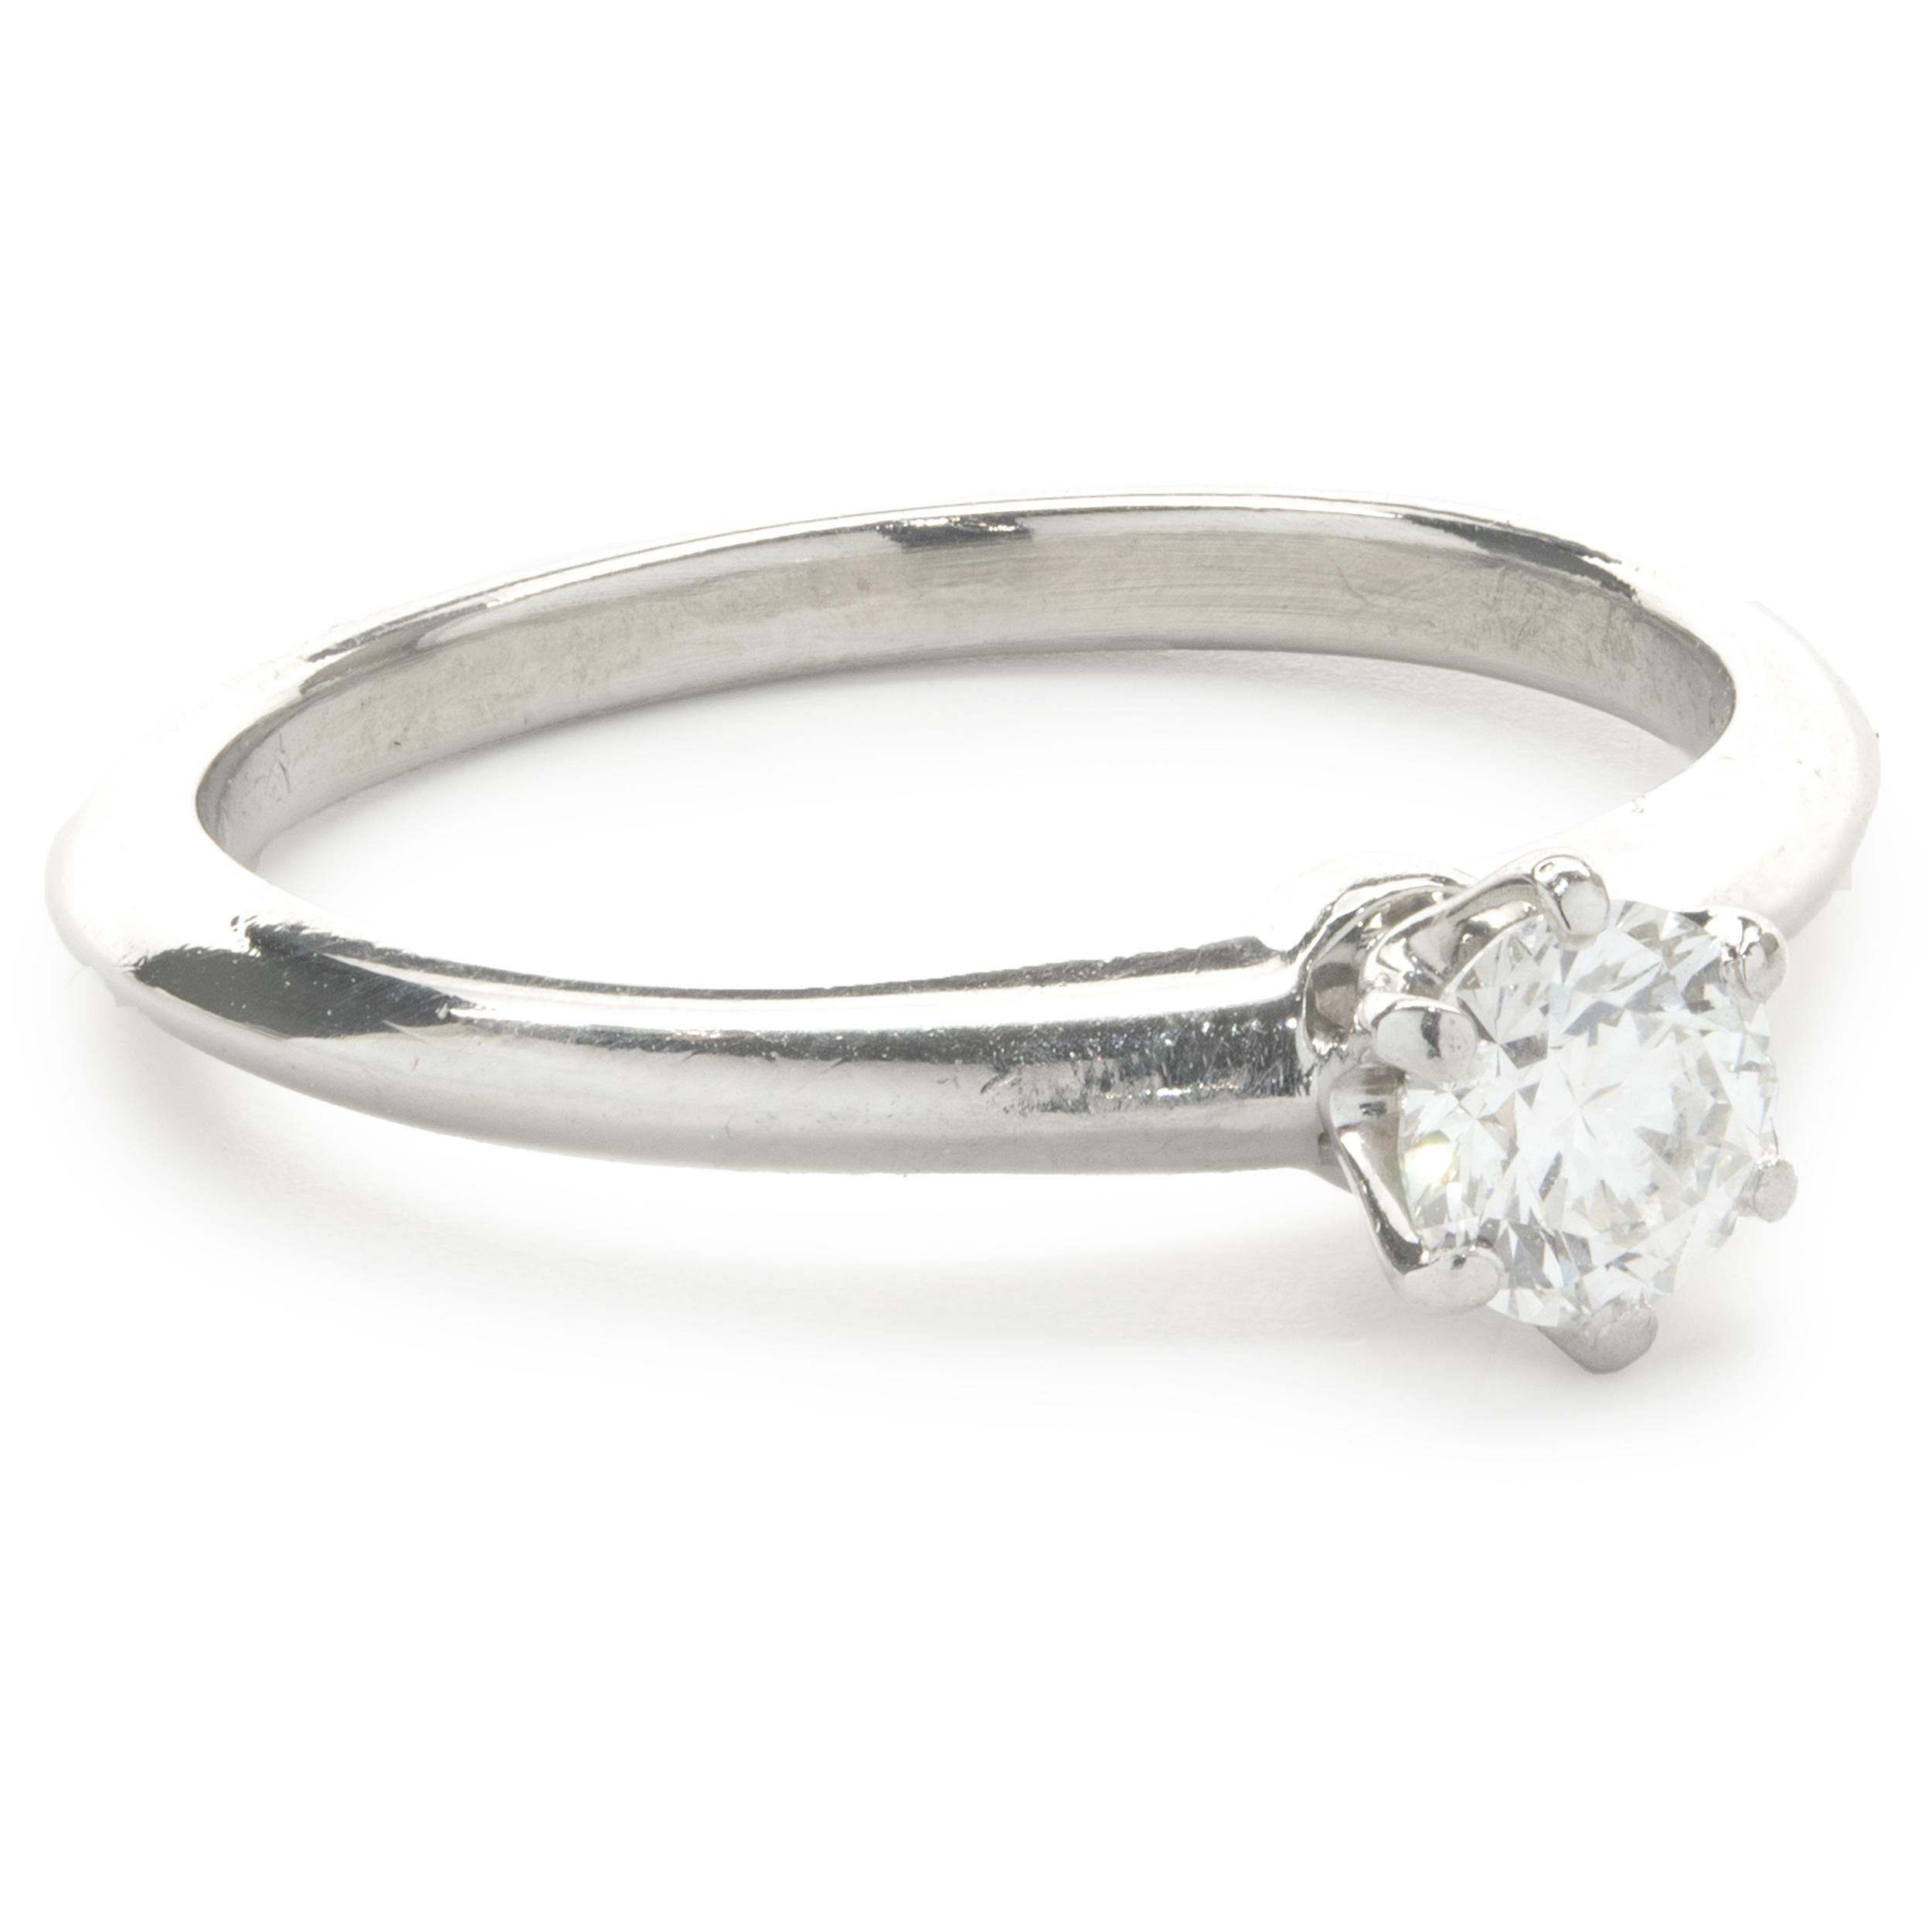 Designer : Tiffany & Co. 
Matériau : Platine
Diamant : 1 taille ronde brillante = 0,39ct
Couleur : F
Clarté : VS2
Taille : 6.5
Dimensions : la partie supérieure de l'anneau mesure 5.6 mm de large
Poids : 4.33 grammes
